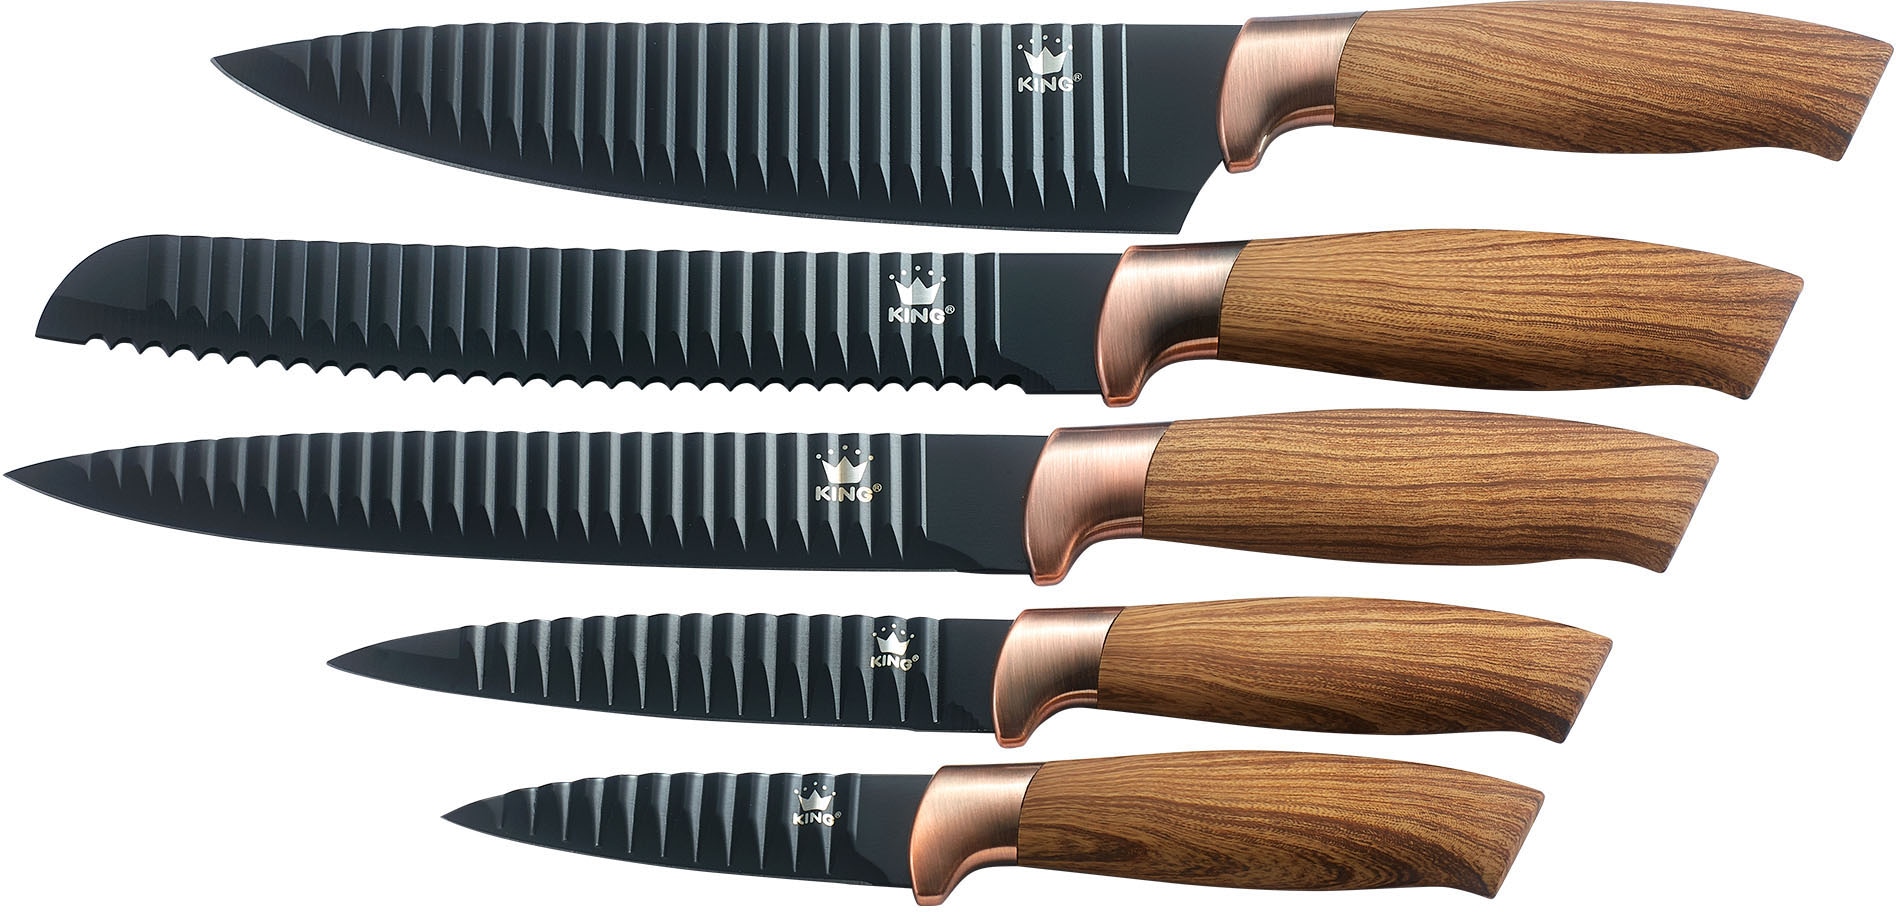 Messer-Set KING BAUR 20cm, 20cm, | kaufen im Holzoptik, (Set, Wellenschliff, tlg., »Essential«, 8.5cm), 12.5cm in 5 20cm, Griffe Geschenk-Etui 5x Messer